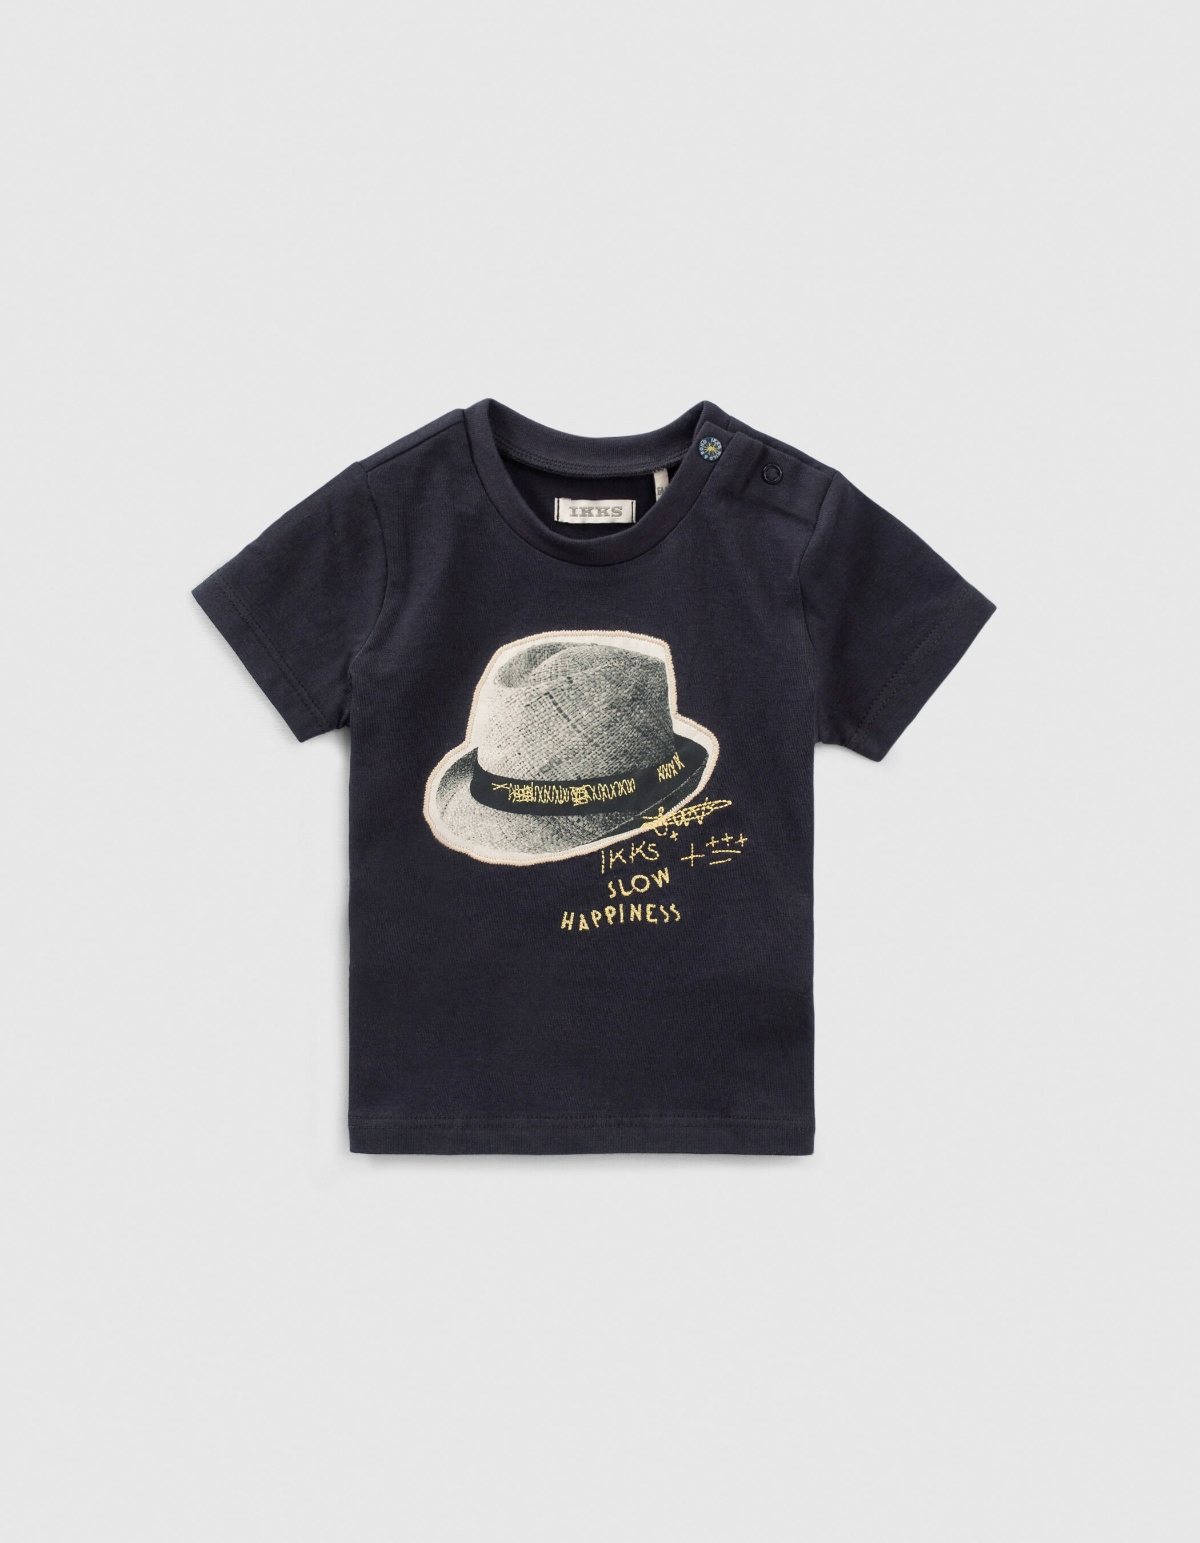 Marineblaues Shirt  mit Hutmotiv für Babyjungen